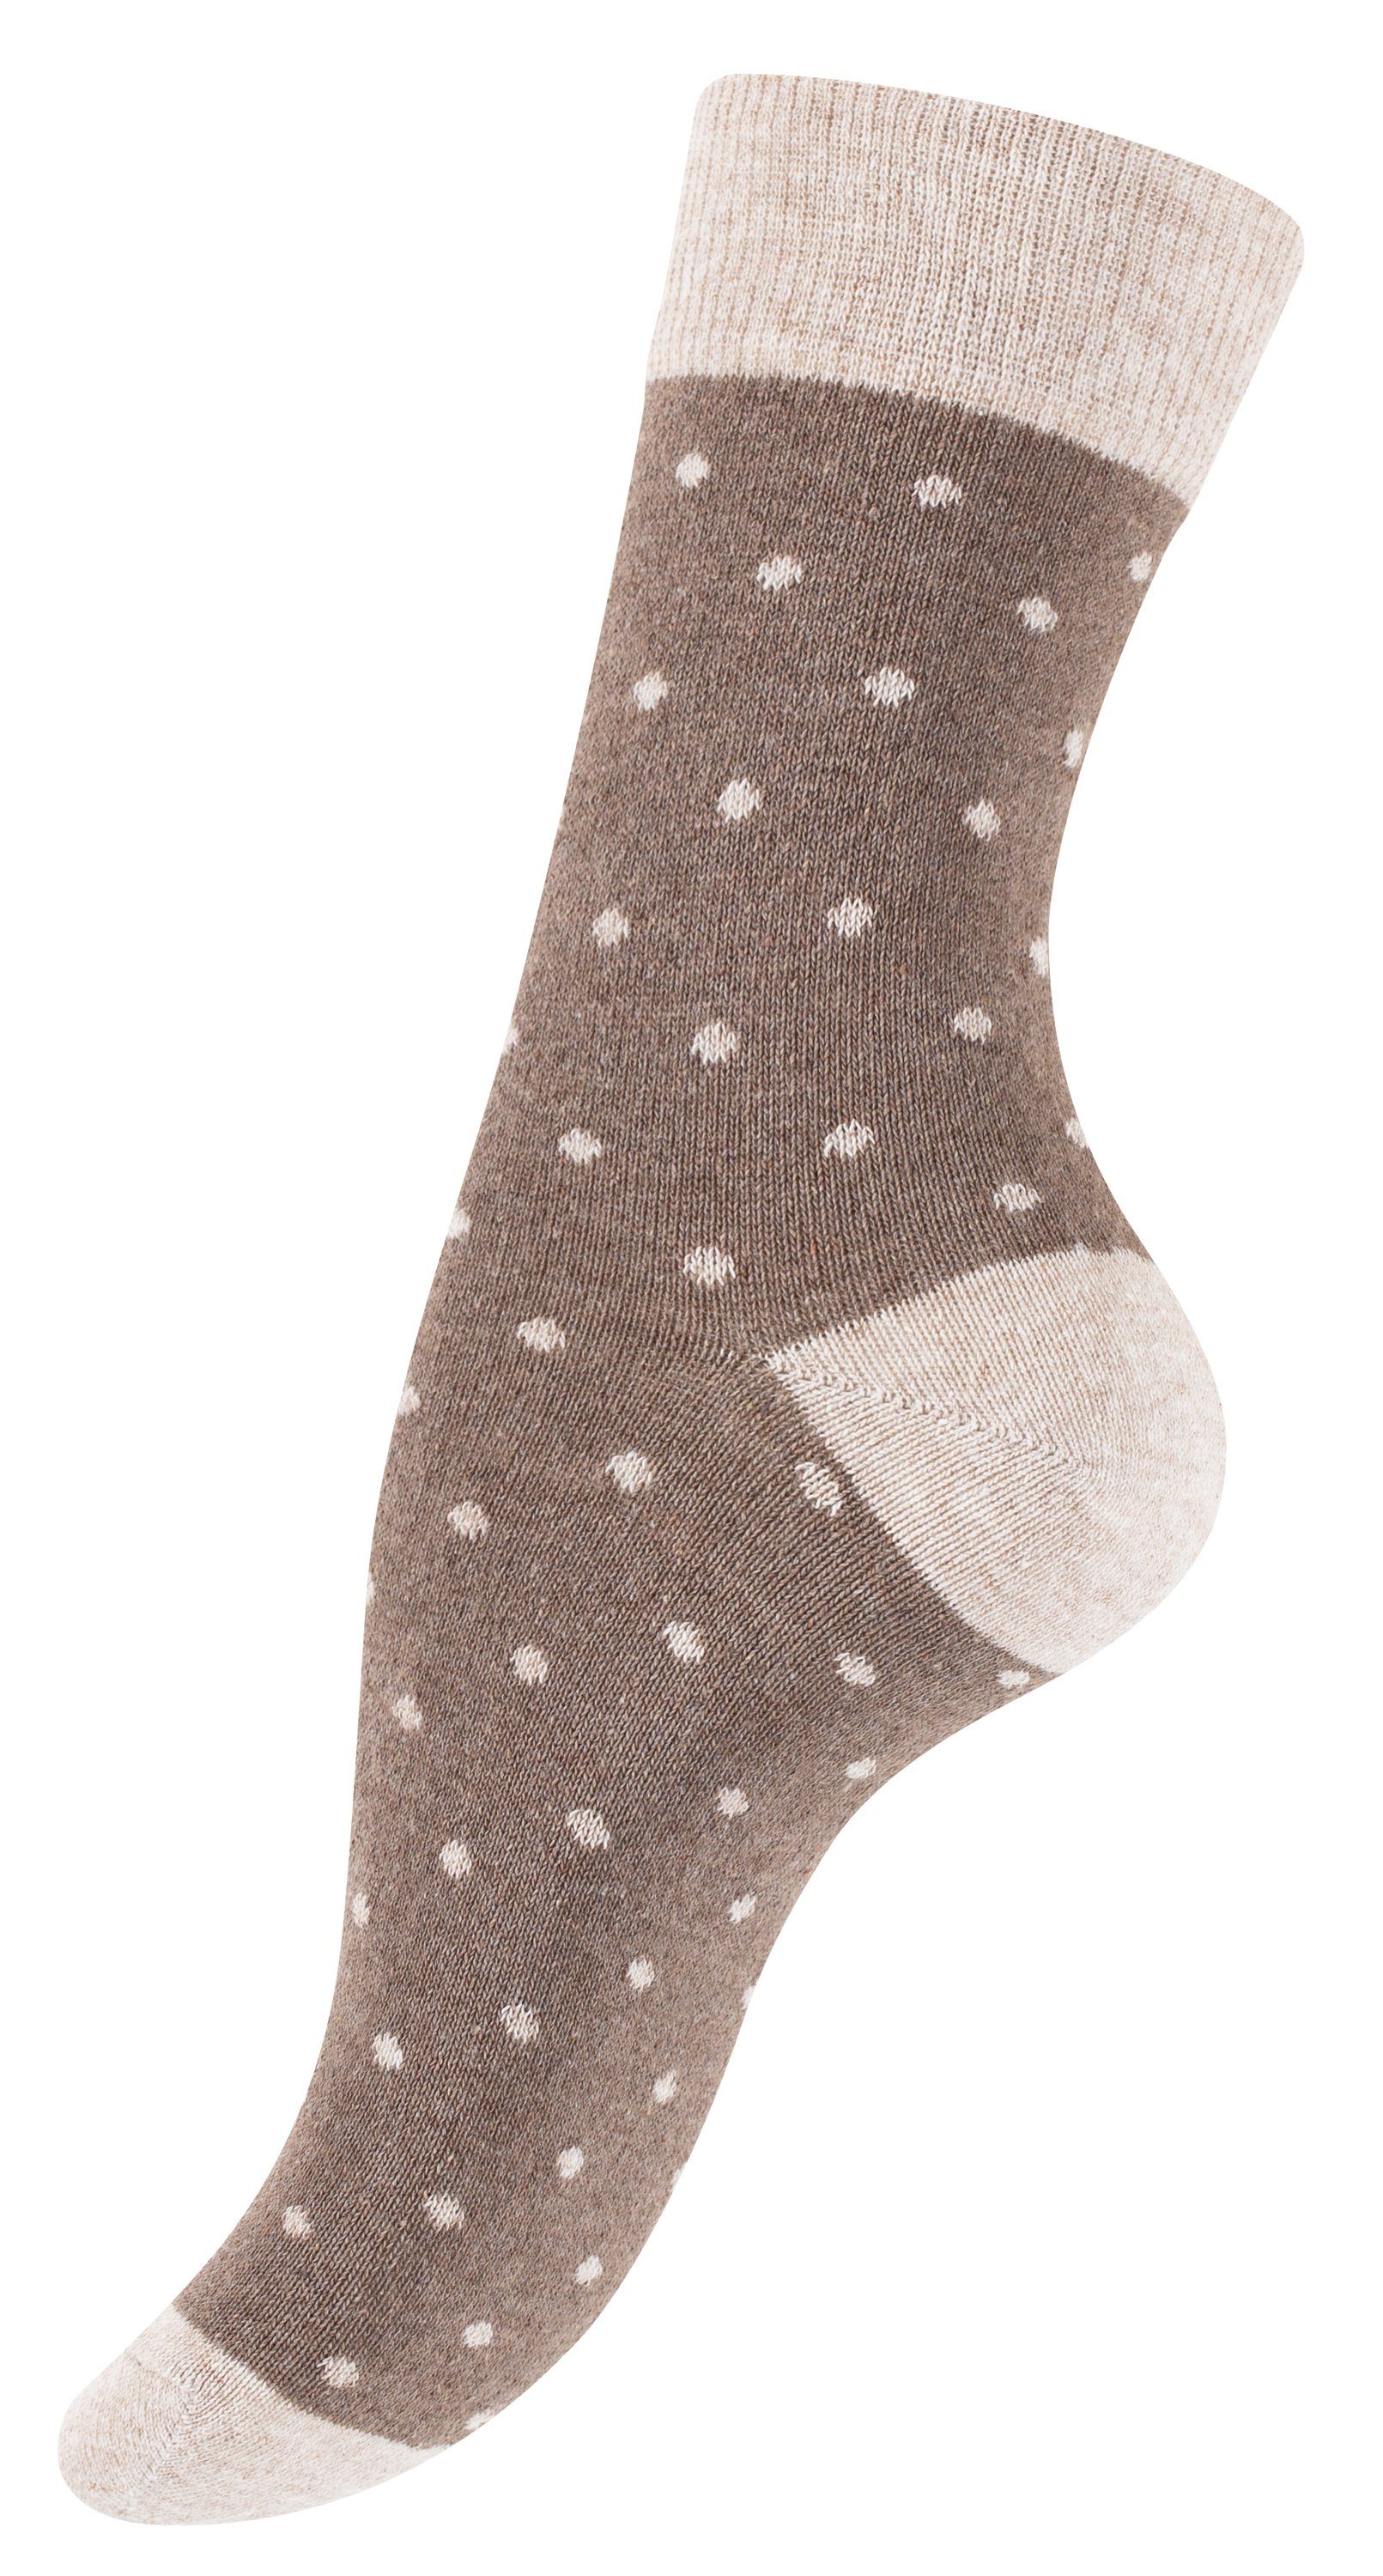 Vincent Creation® Socken (10-Paar) braun/beige in Baumwollqualität angenehmer